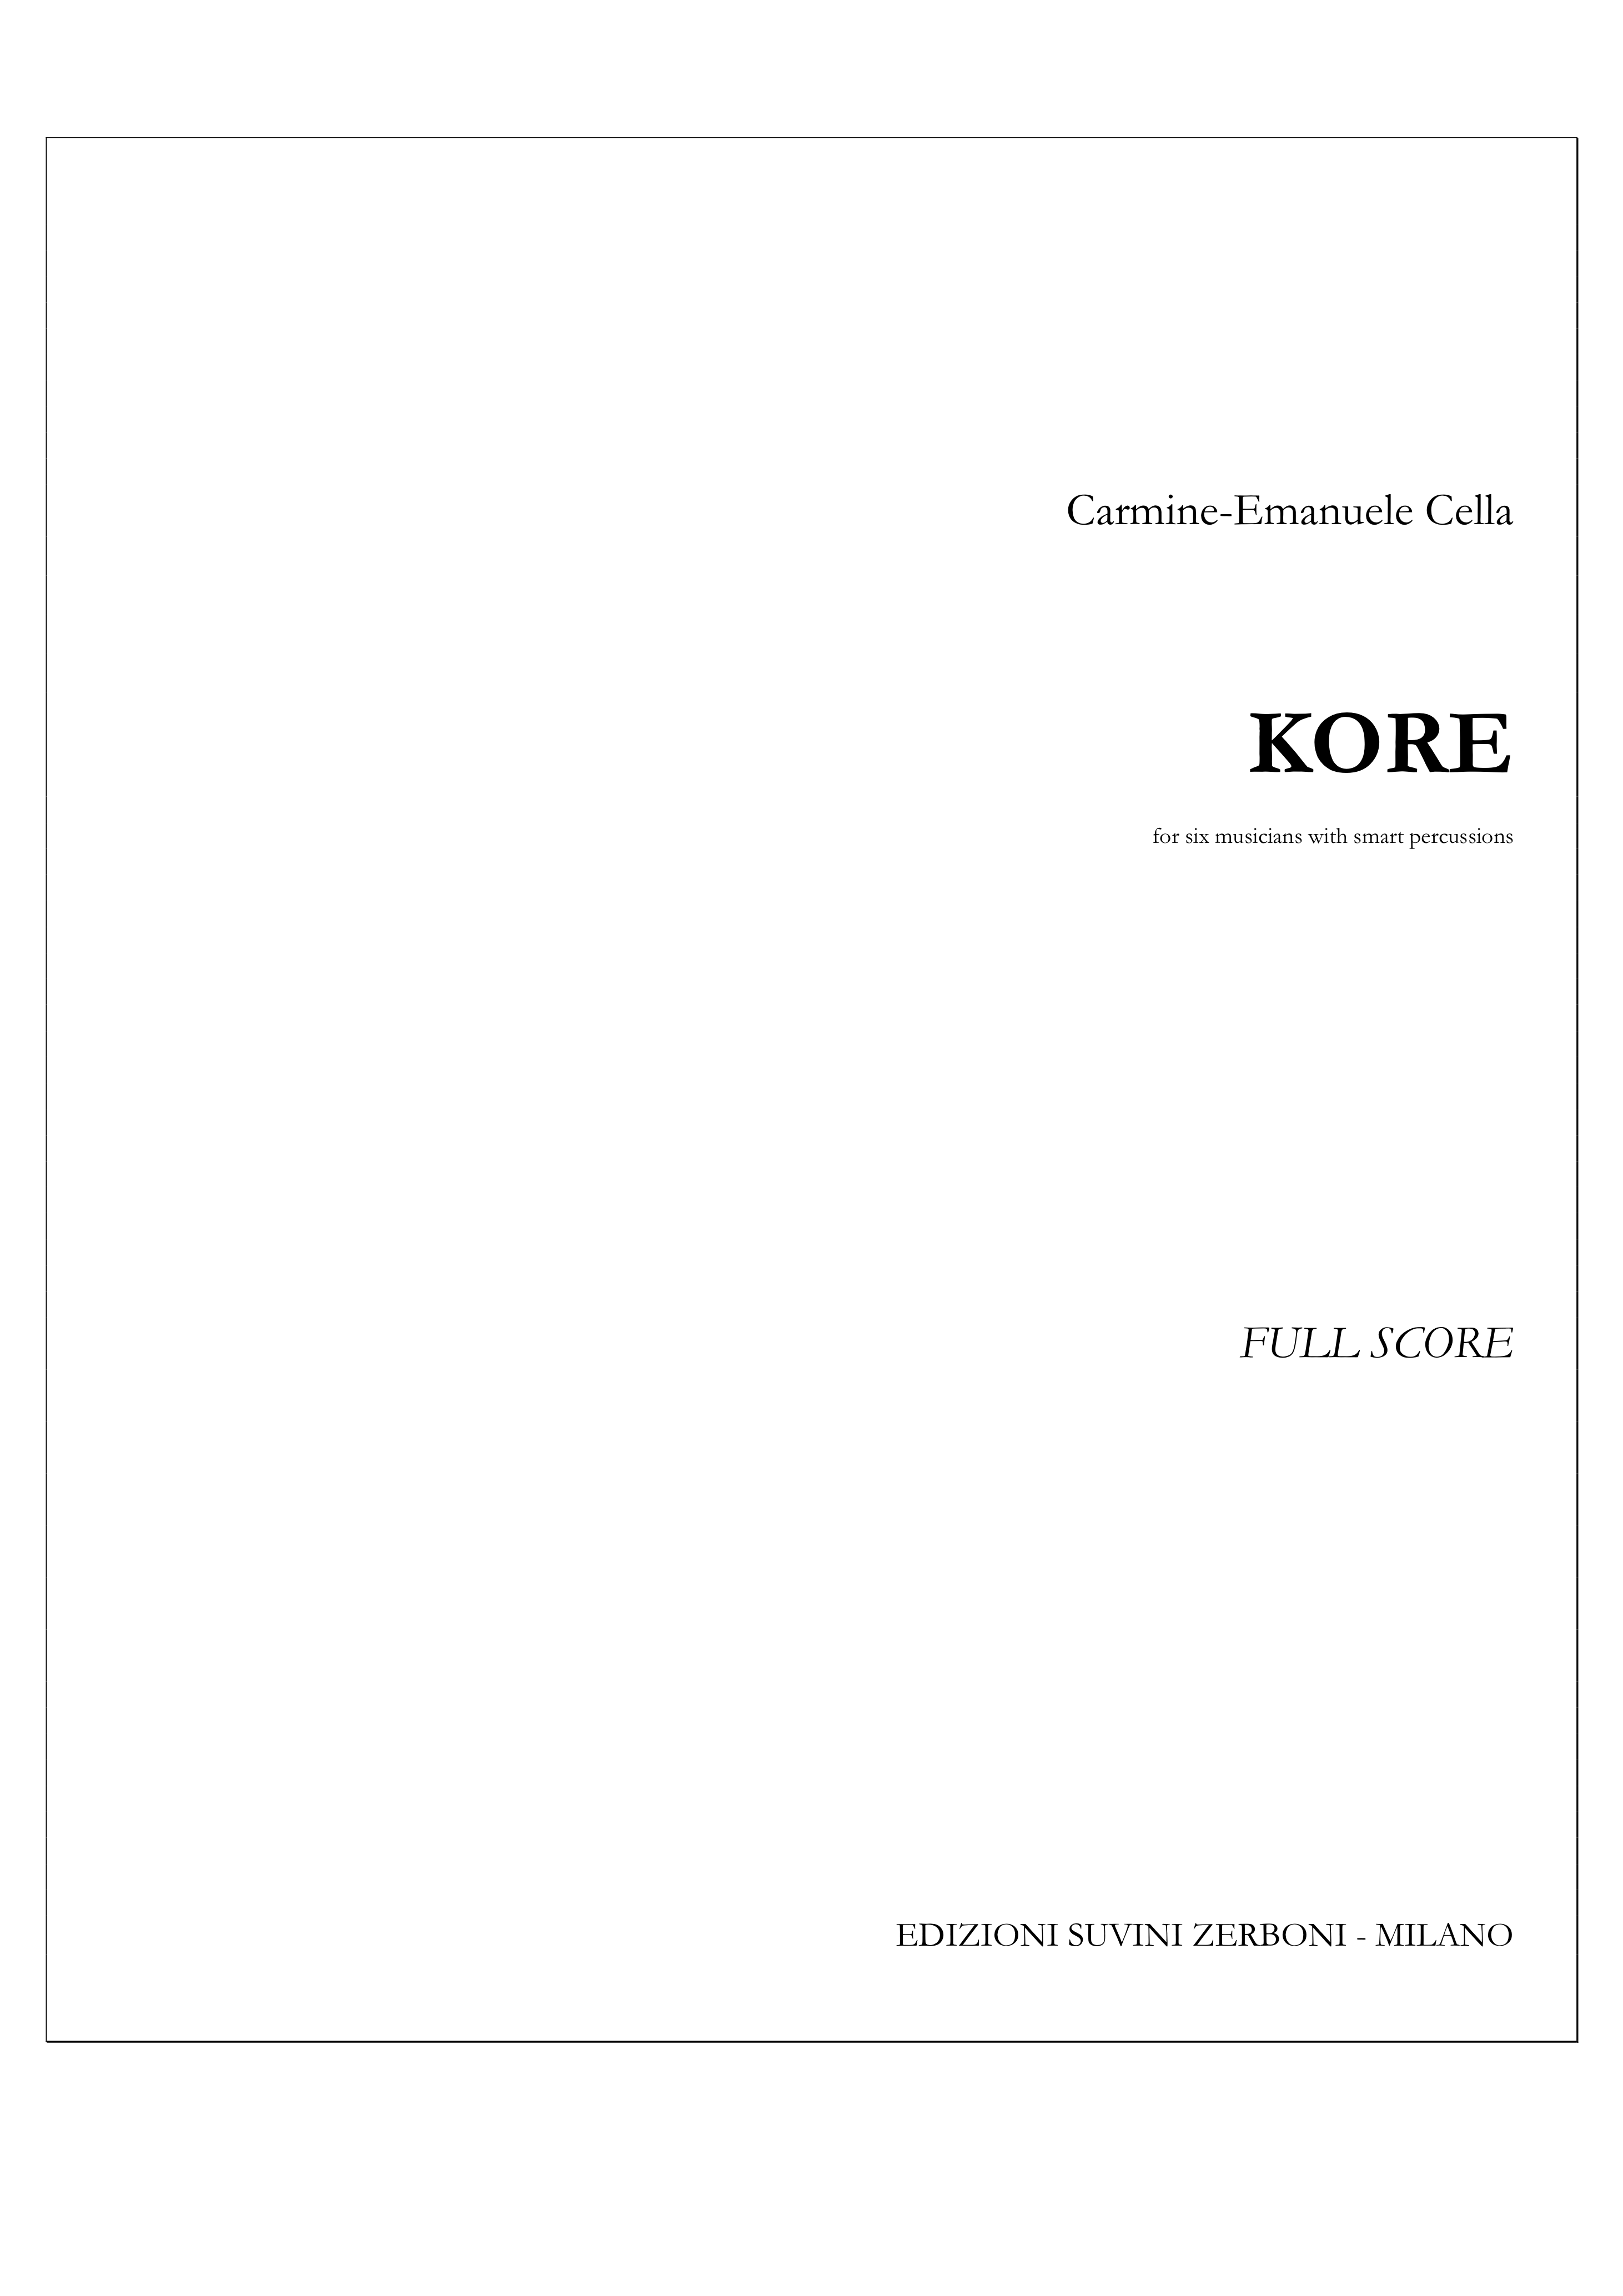 Kore_Cella Carmine 1